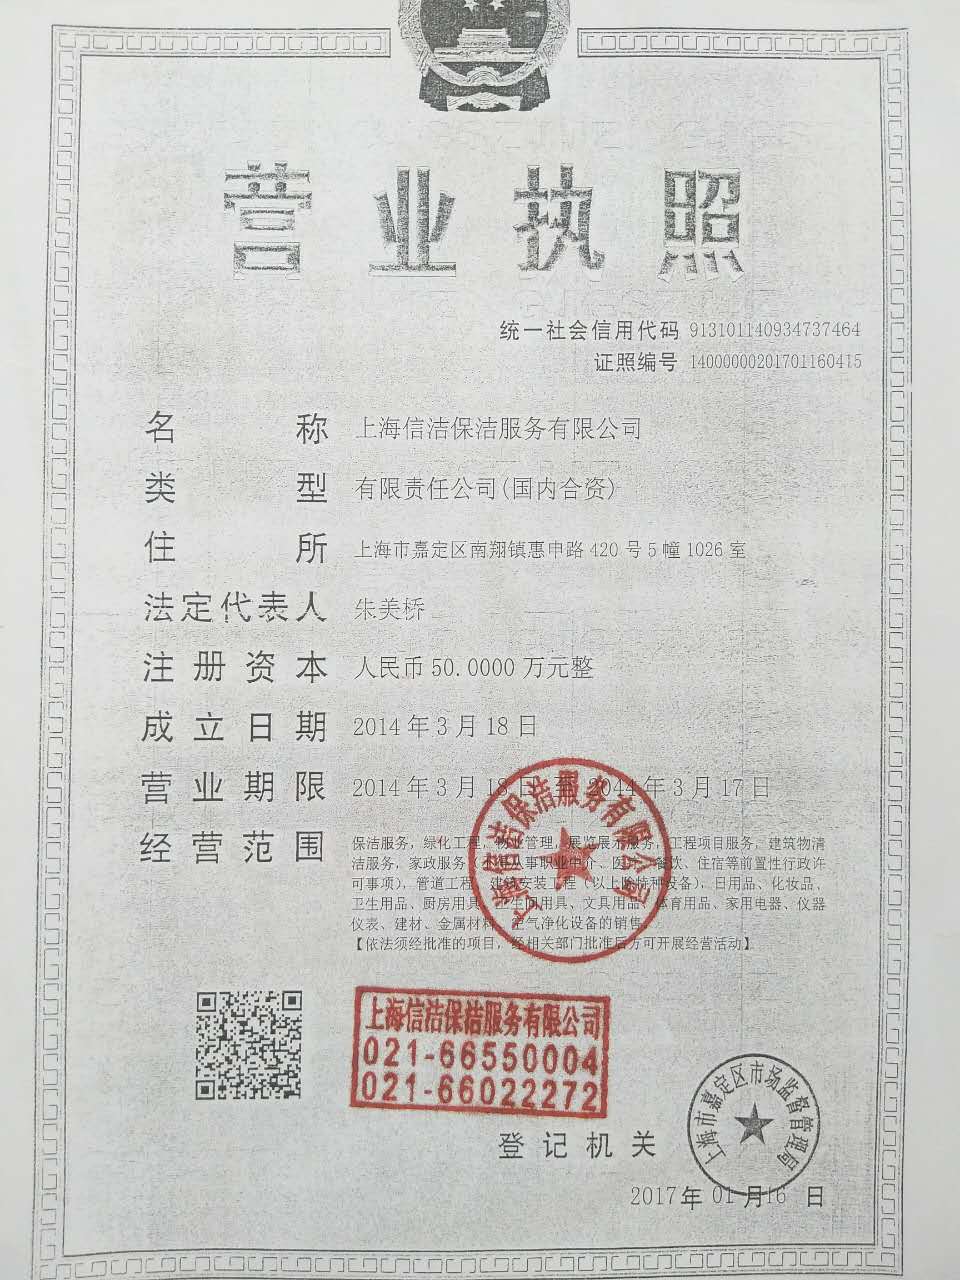 上海信洁保洁公司营业执照